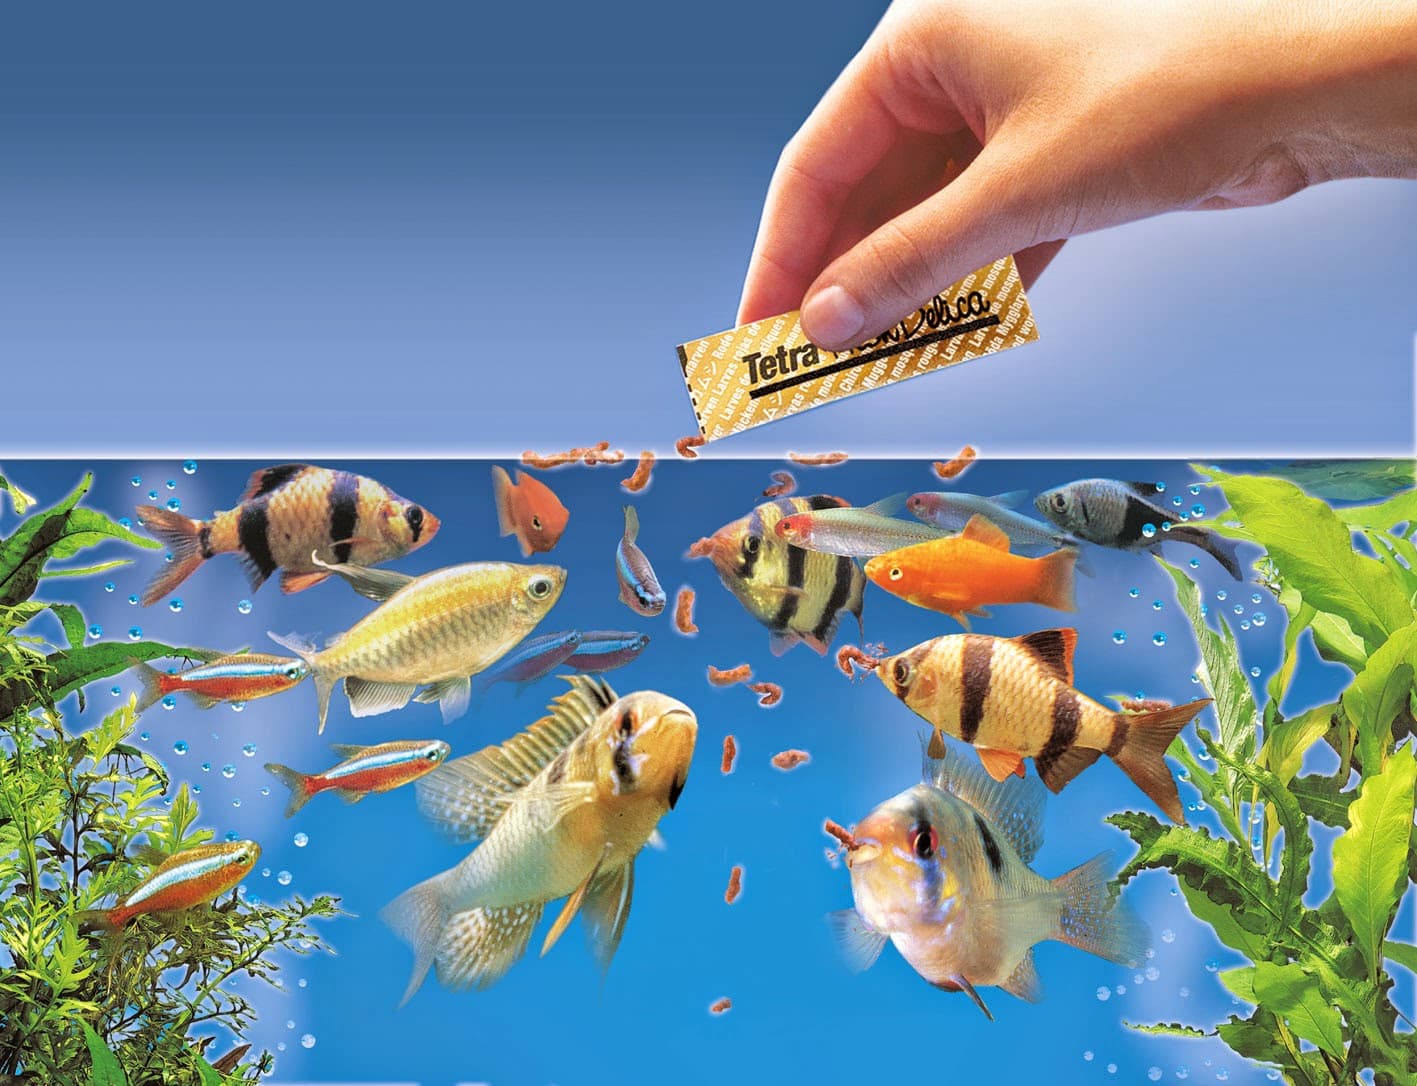 types-of-aquarium-fish-food-types-and-nutritional-values-the-aquarium-guide